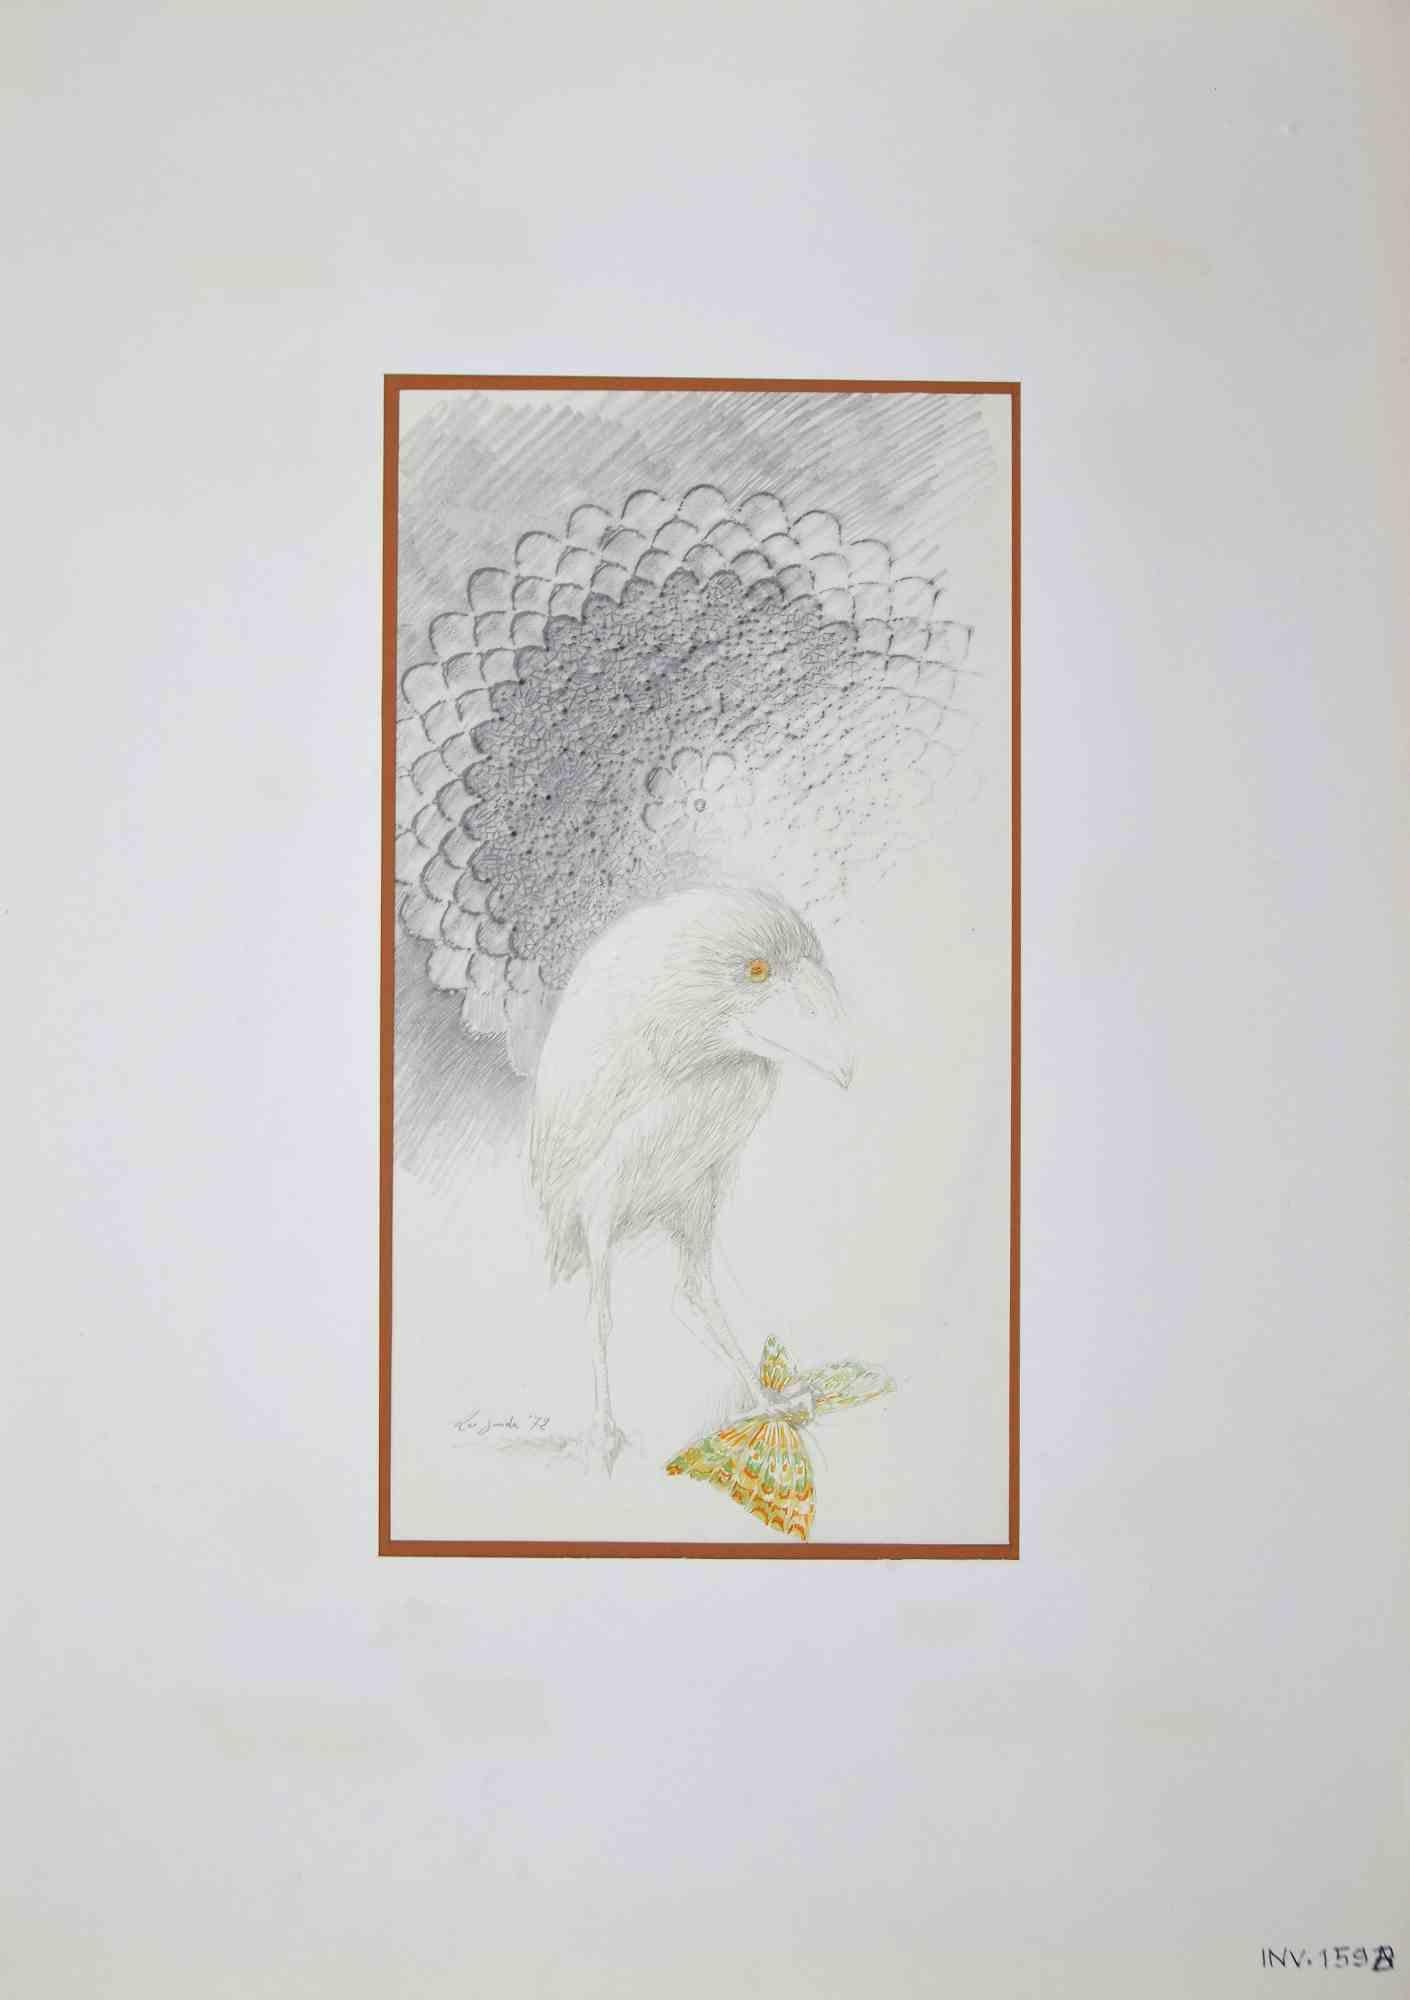 Le tueur de papillons est une œuvre d'art originale réalisée dans les années 1970 par l'artiste italien Contemporary.  Leo Guida  (1992 - 2017).

Crayon et aquarelle originaux sur papier.

Bonnes conditions.

Signé à la main.

L'œuvre d'art est